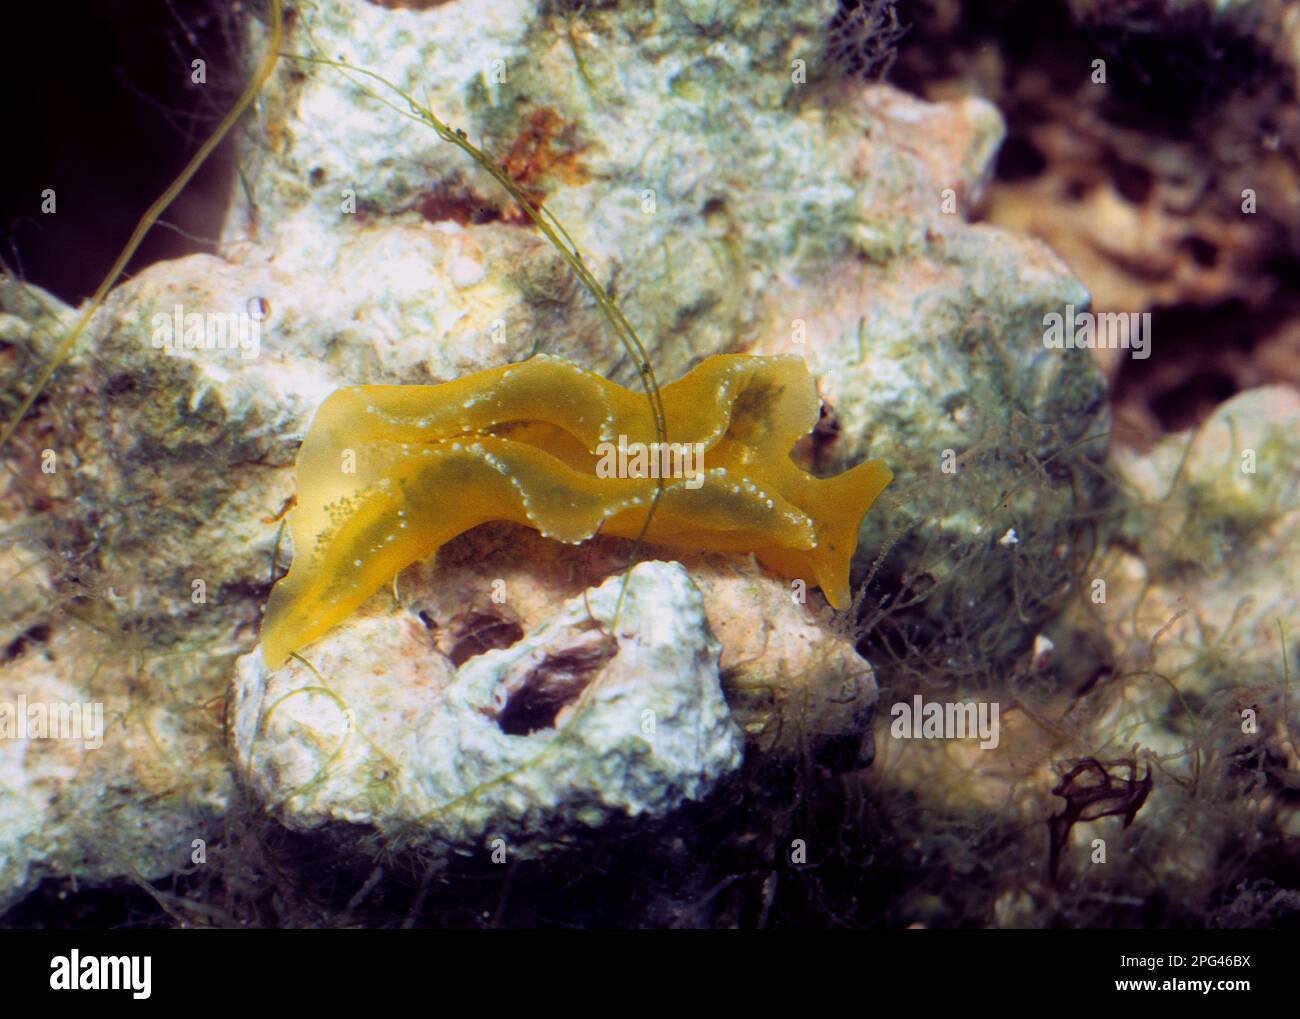 Seeschnecke Elysia flava, eine Weichtiere ohne Schale (Opisthobranch), die sich von Algen ernährt. Stockfoto